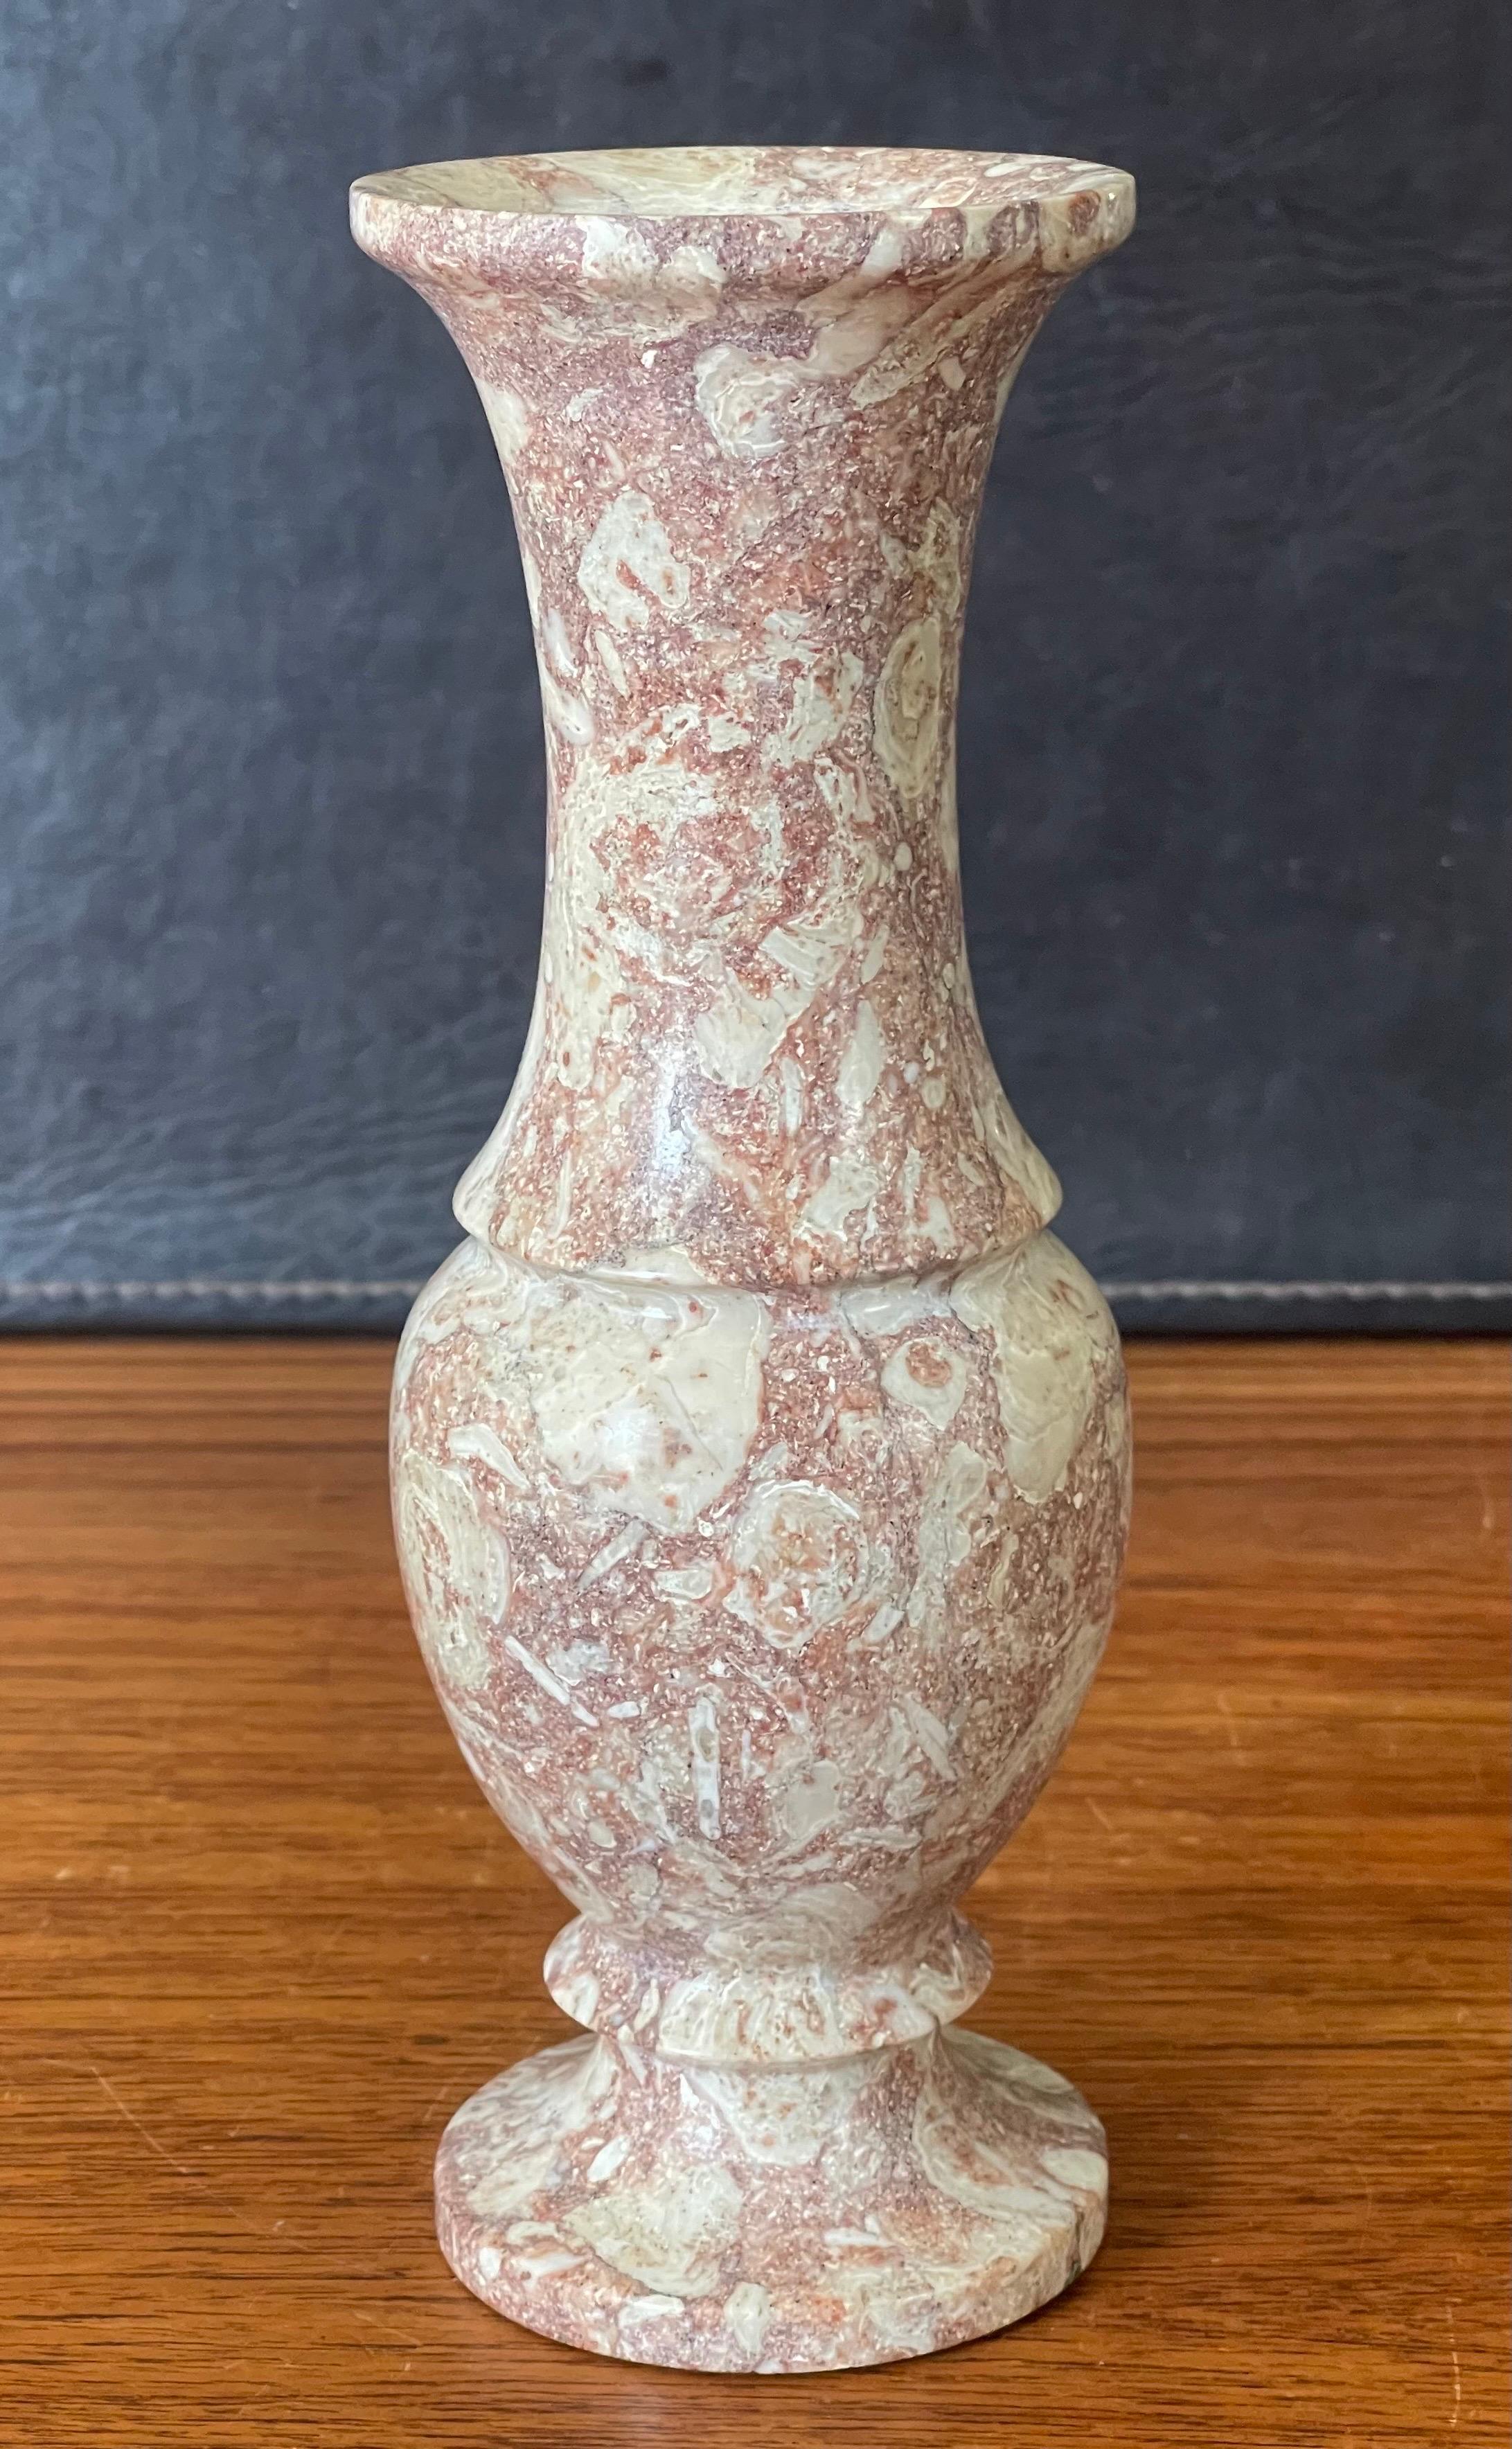 Magnifique vase en marbre italien post-moderne, datant des années 1970.  Des mouchetures de couleur beige, marron et crème sont visibles sur l'ensemble du vase. La pièce est en très bon état vintage, sans éclats ni fissures, et mesure 3,5 